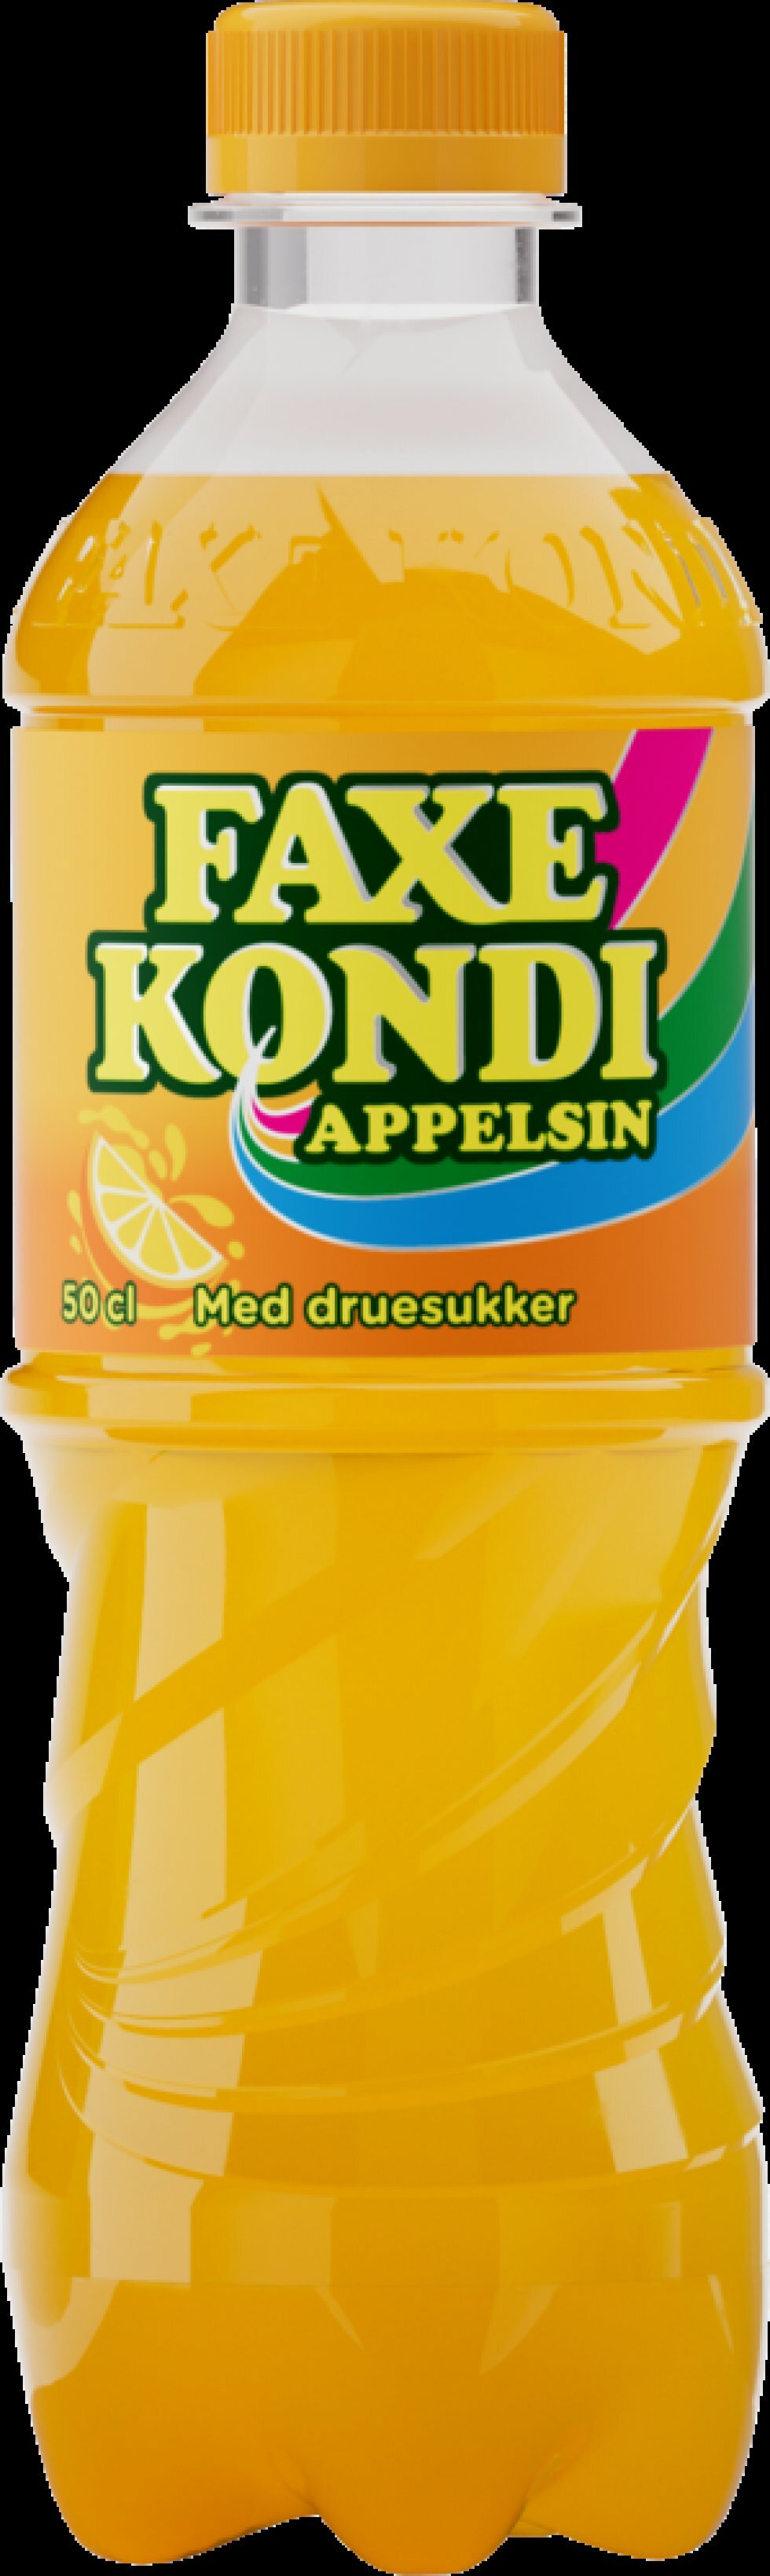 Faxe Kondi lancerer ny Appelsin-variant efter 52 år med den ikoniske lemon/lime